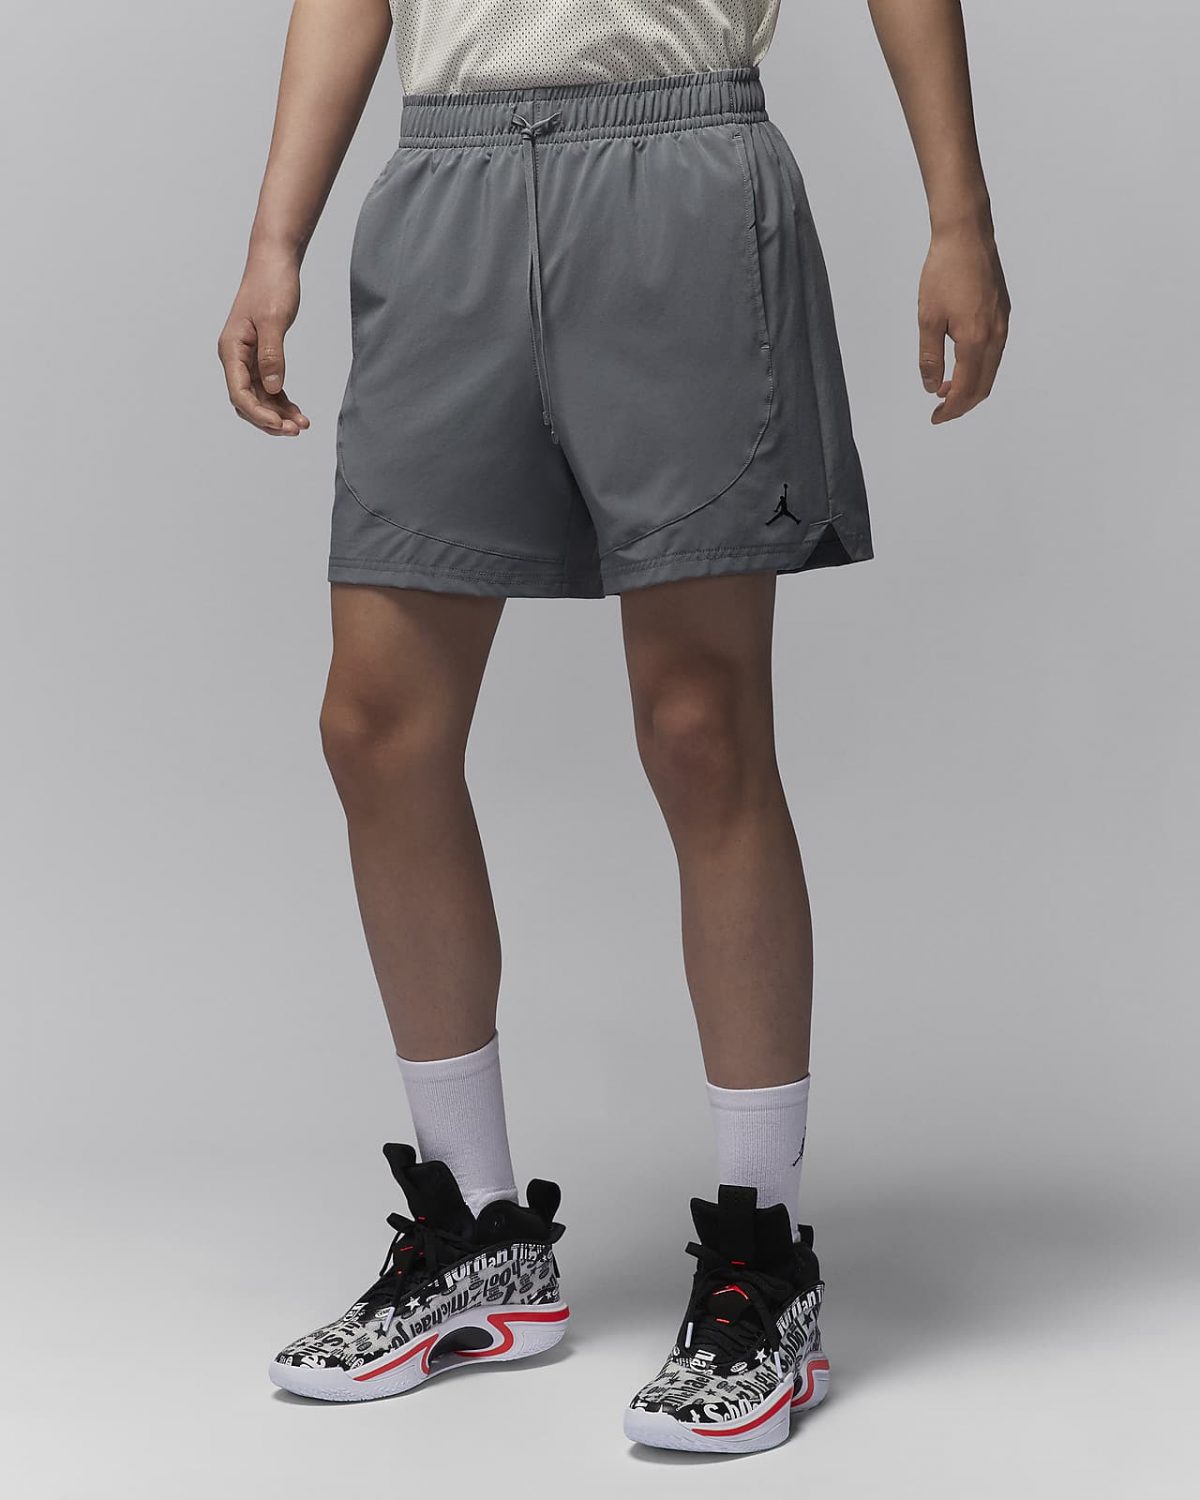 Мужские шорты nike Jordan Dri-FIT Sport черные фото